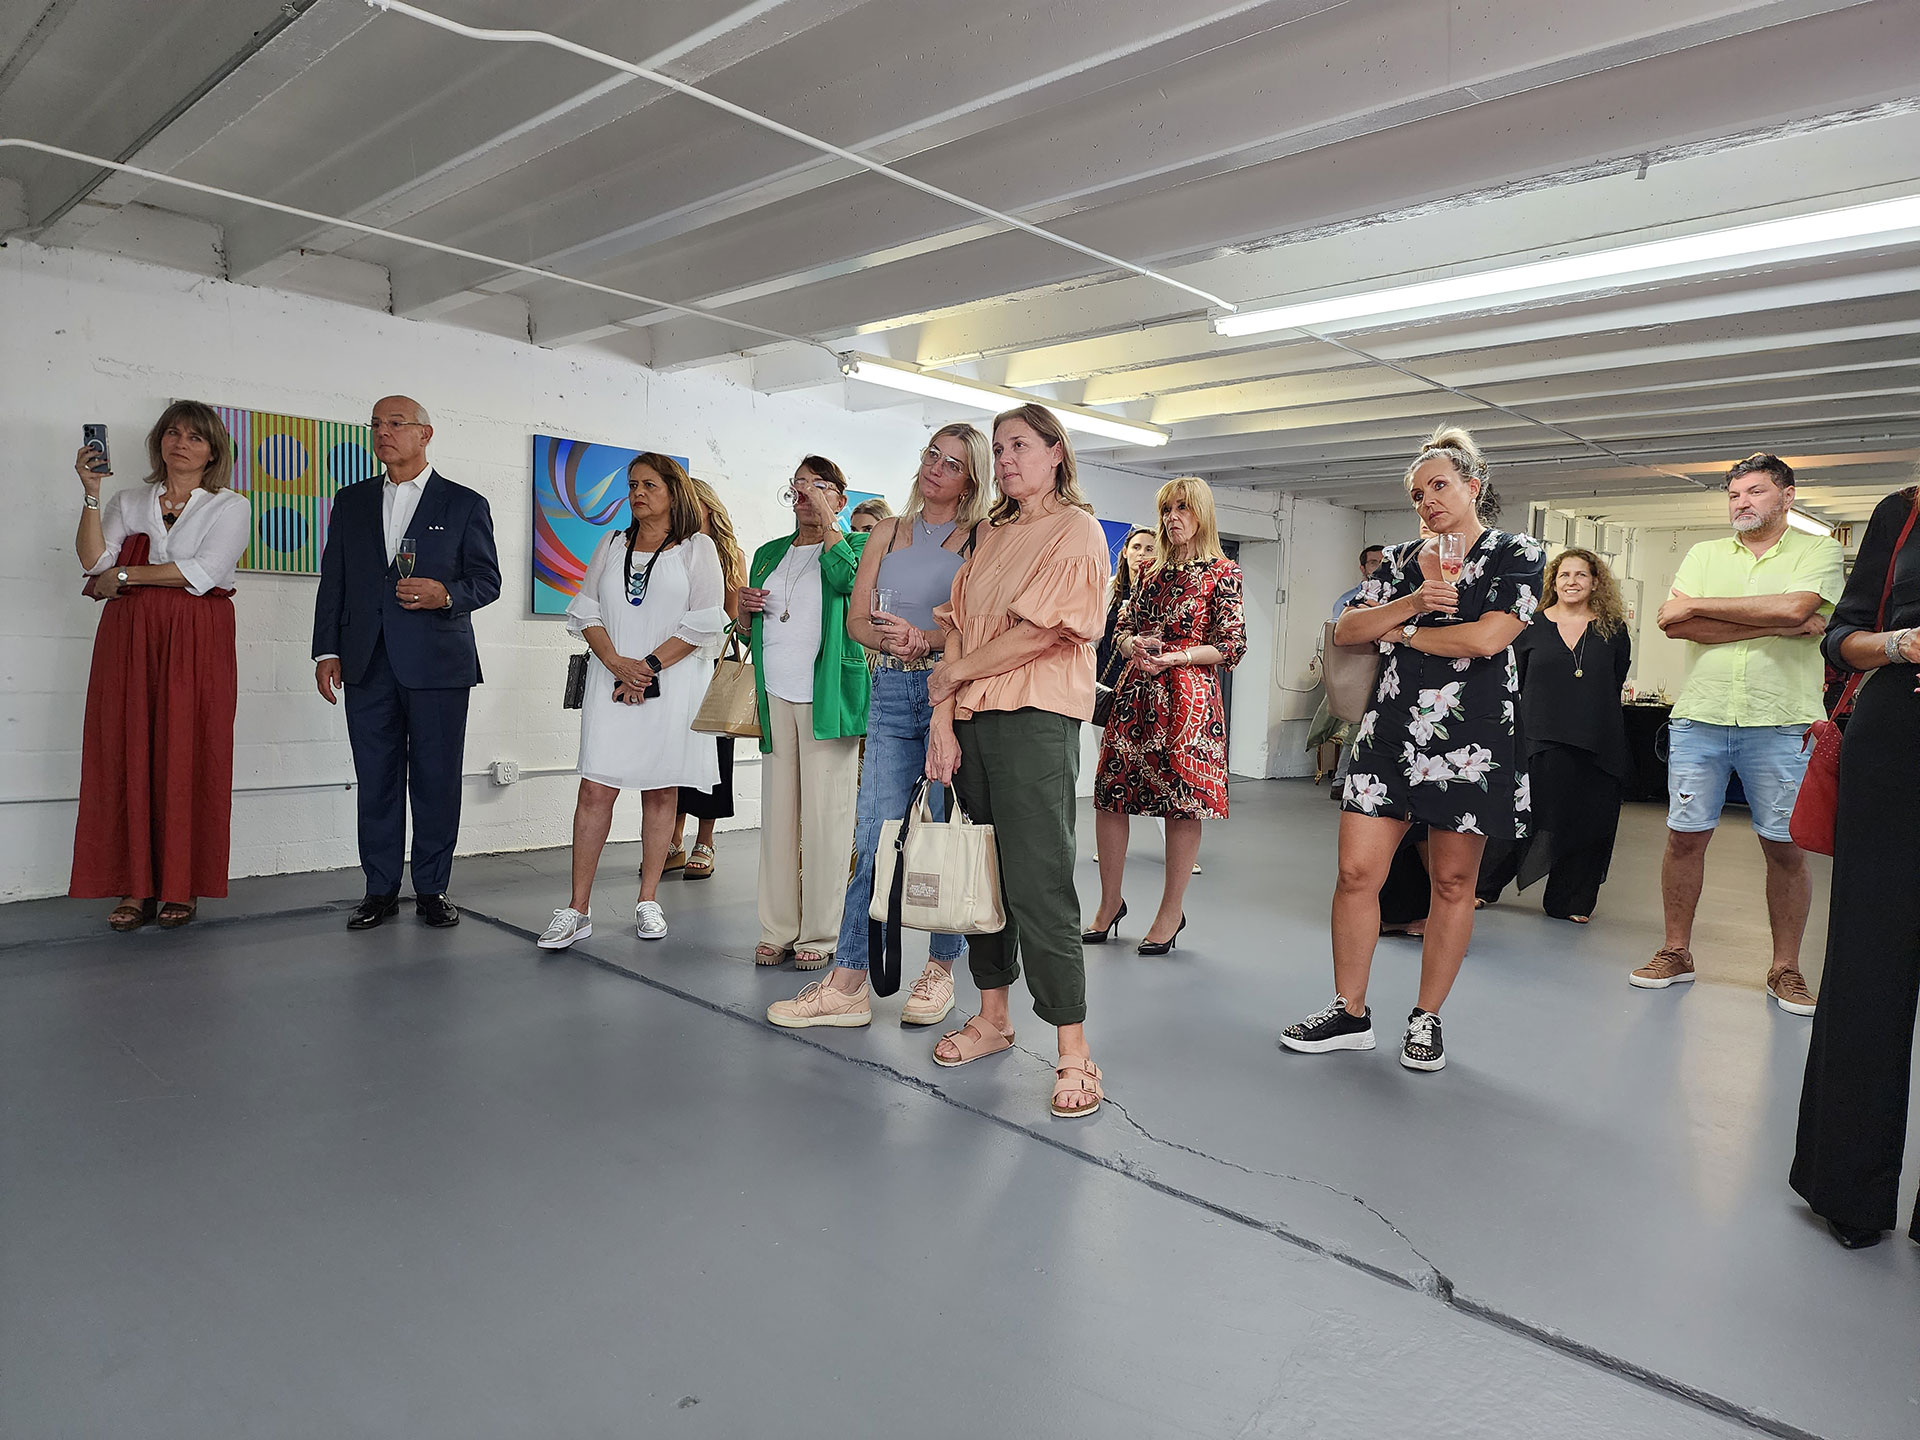 La Fundación Pro-Mujer unió fuerzas con la galería de arte de Daniel Maman en Miami en un evento que busca destacar el rol de las mujeres en el arte